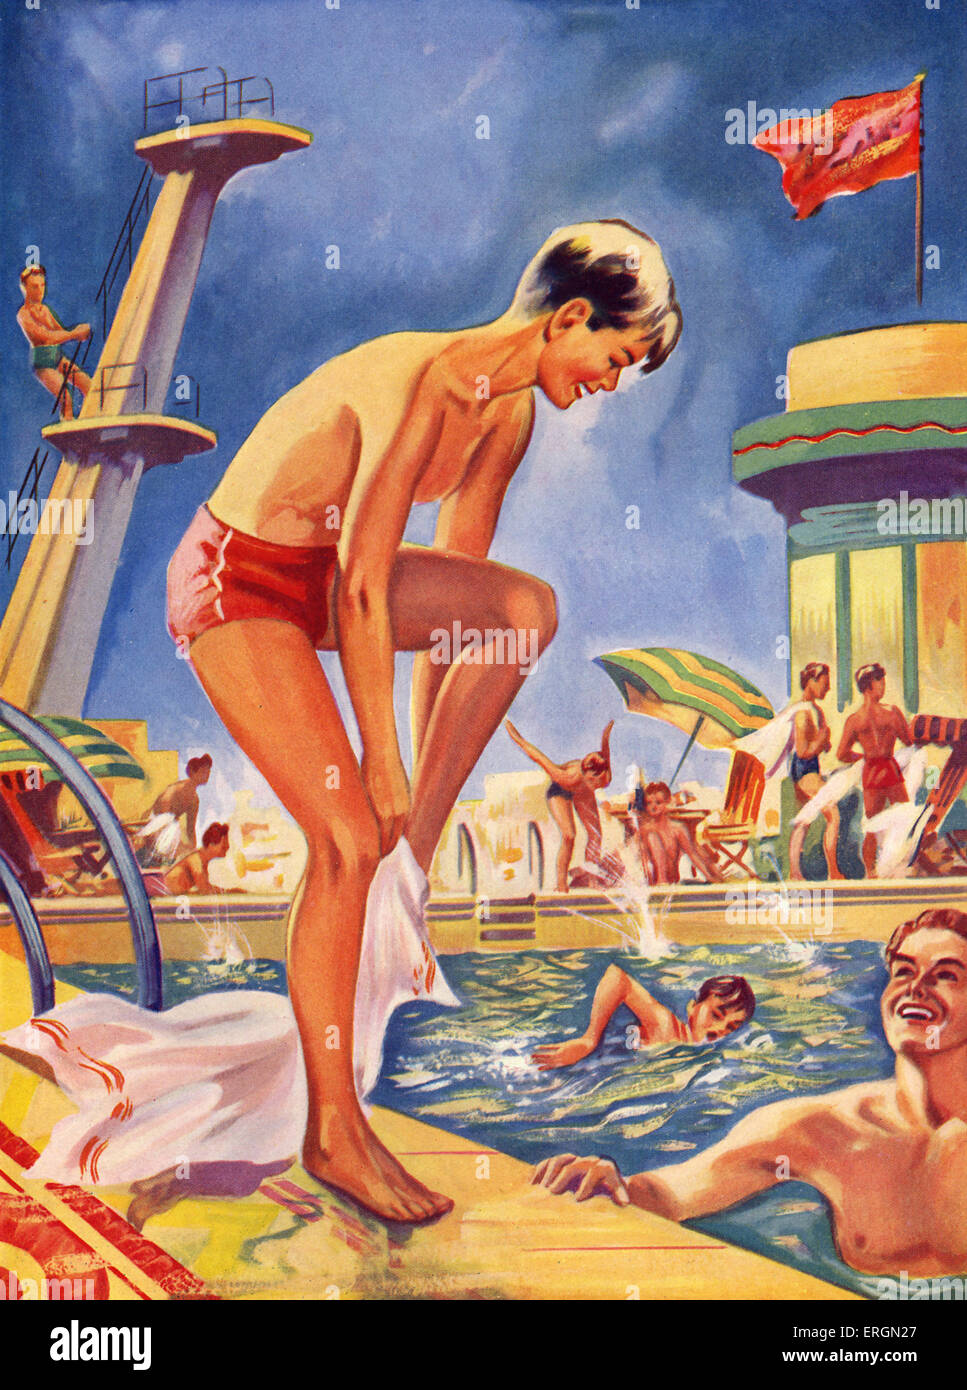 Lido piscina 1930s Illsutration dalla fine degli anni trenta, artista non noto dalla meraviglia serie del libro Foto Stock